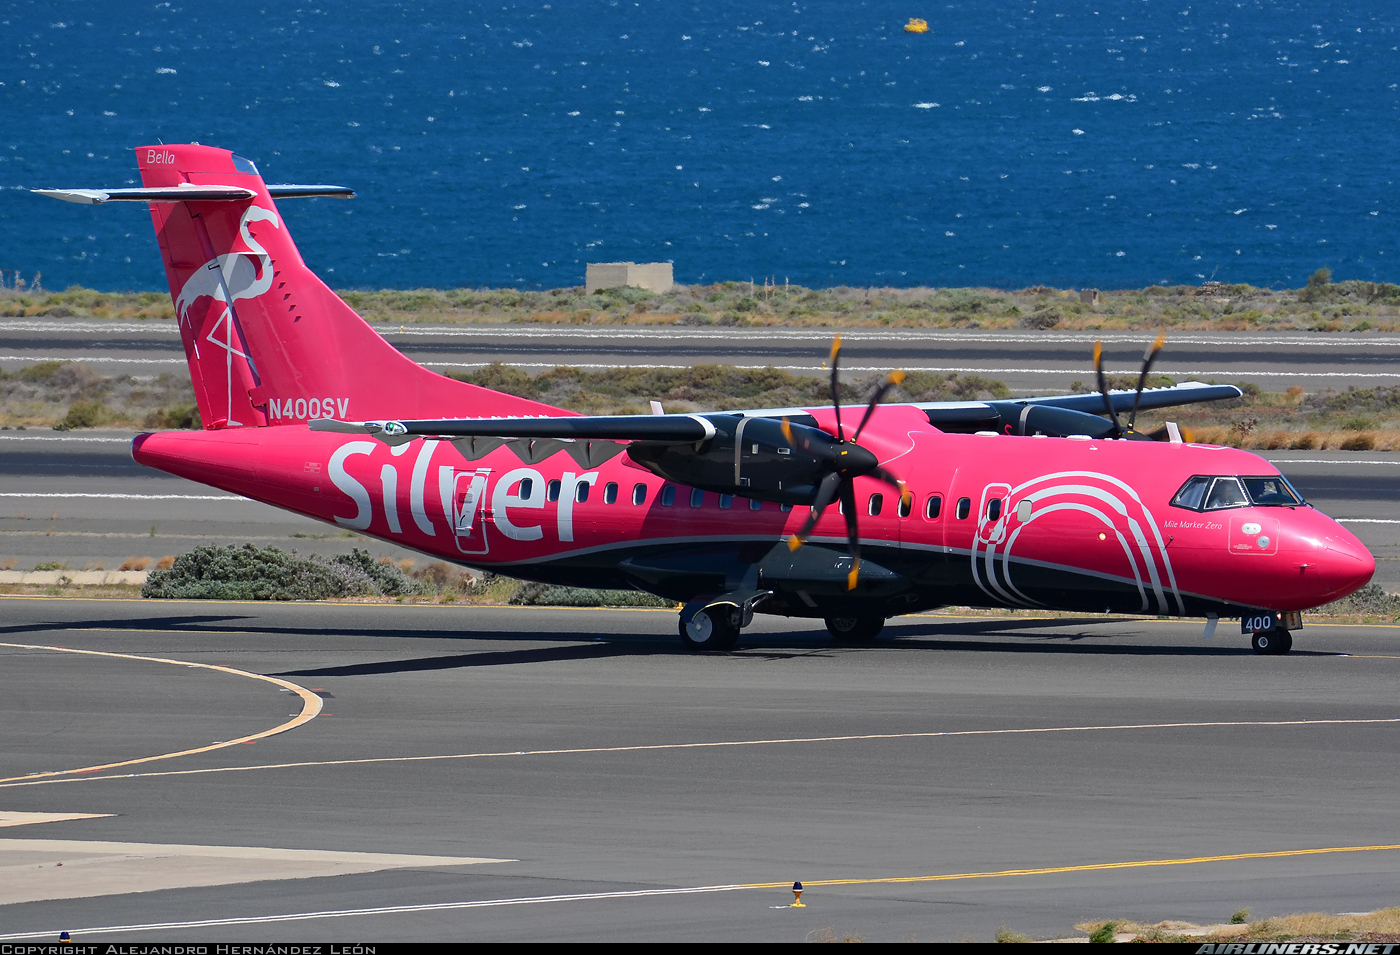 Silver-600-ATR-runway-by-ocean-4947211